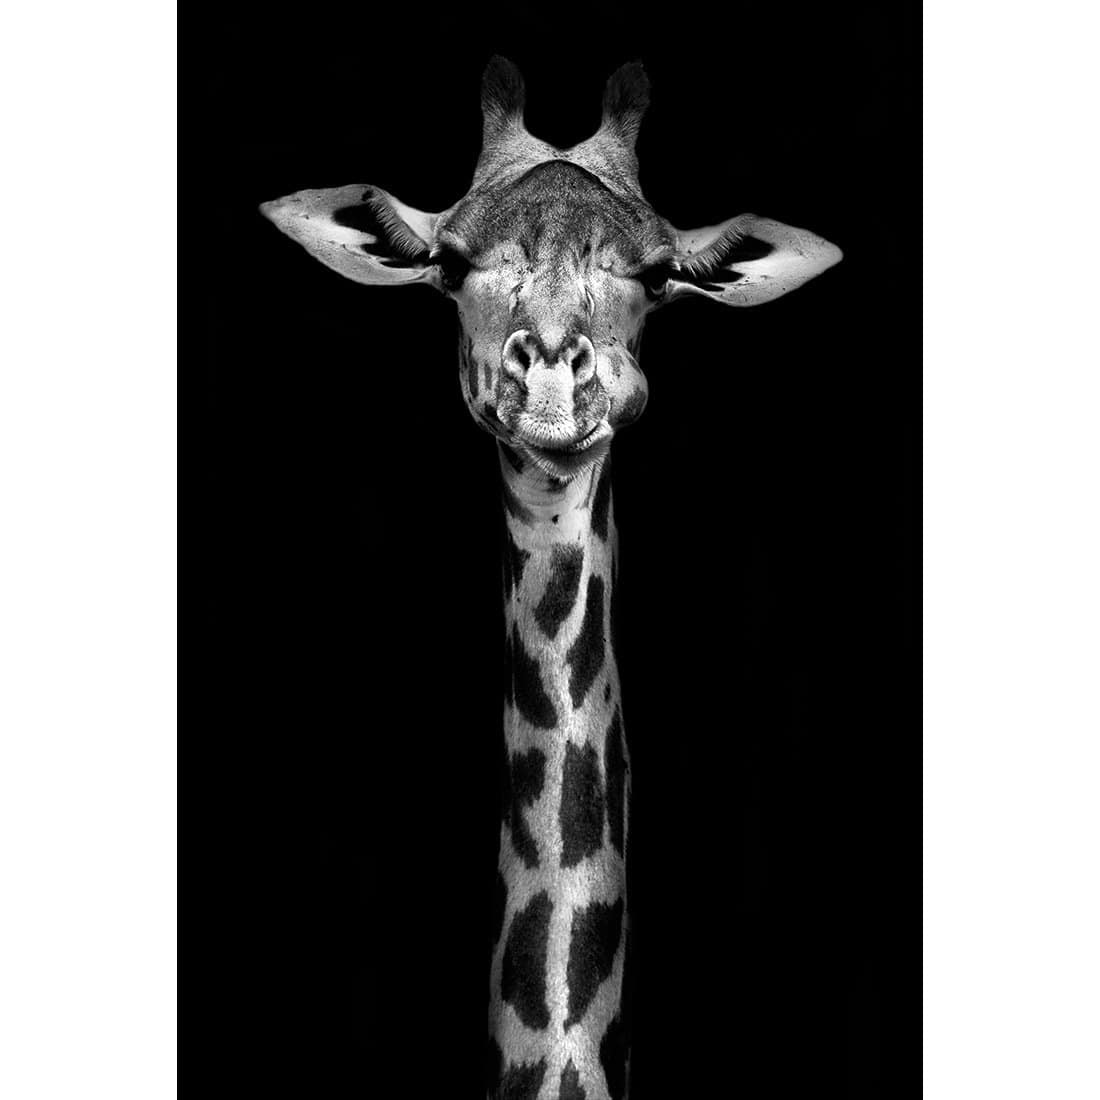 Thornycroft Giraffe-Acrylic-Wall Art Design-With Border-Acrylic - No Frame-45x30cm-Wall Art Designs